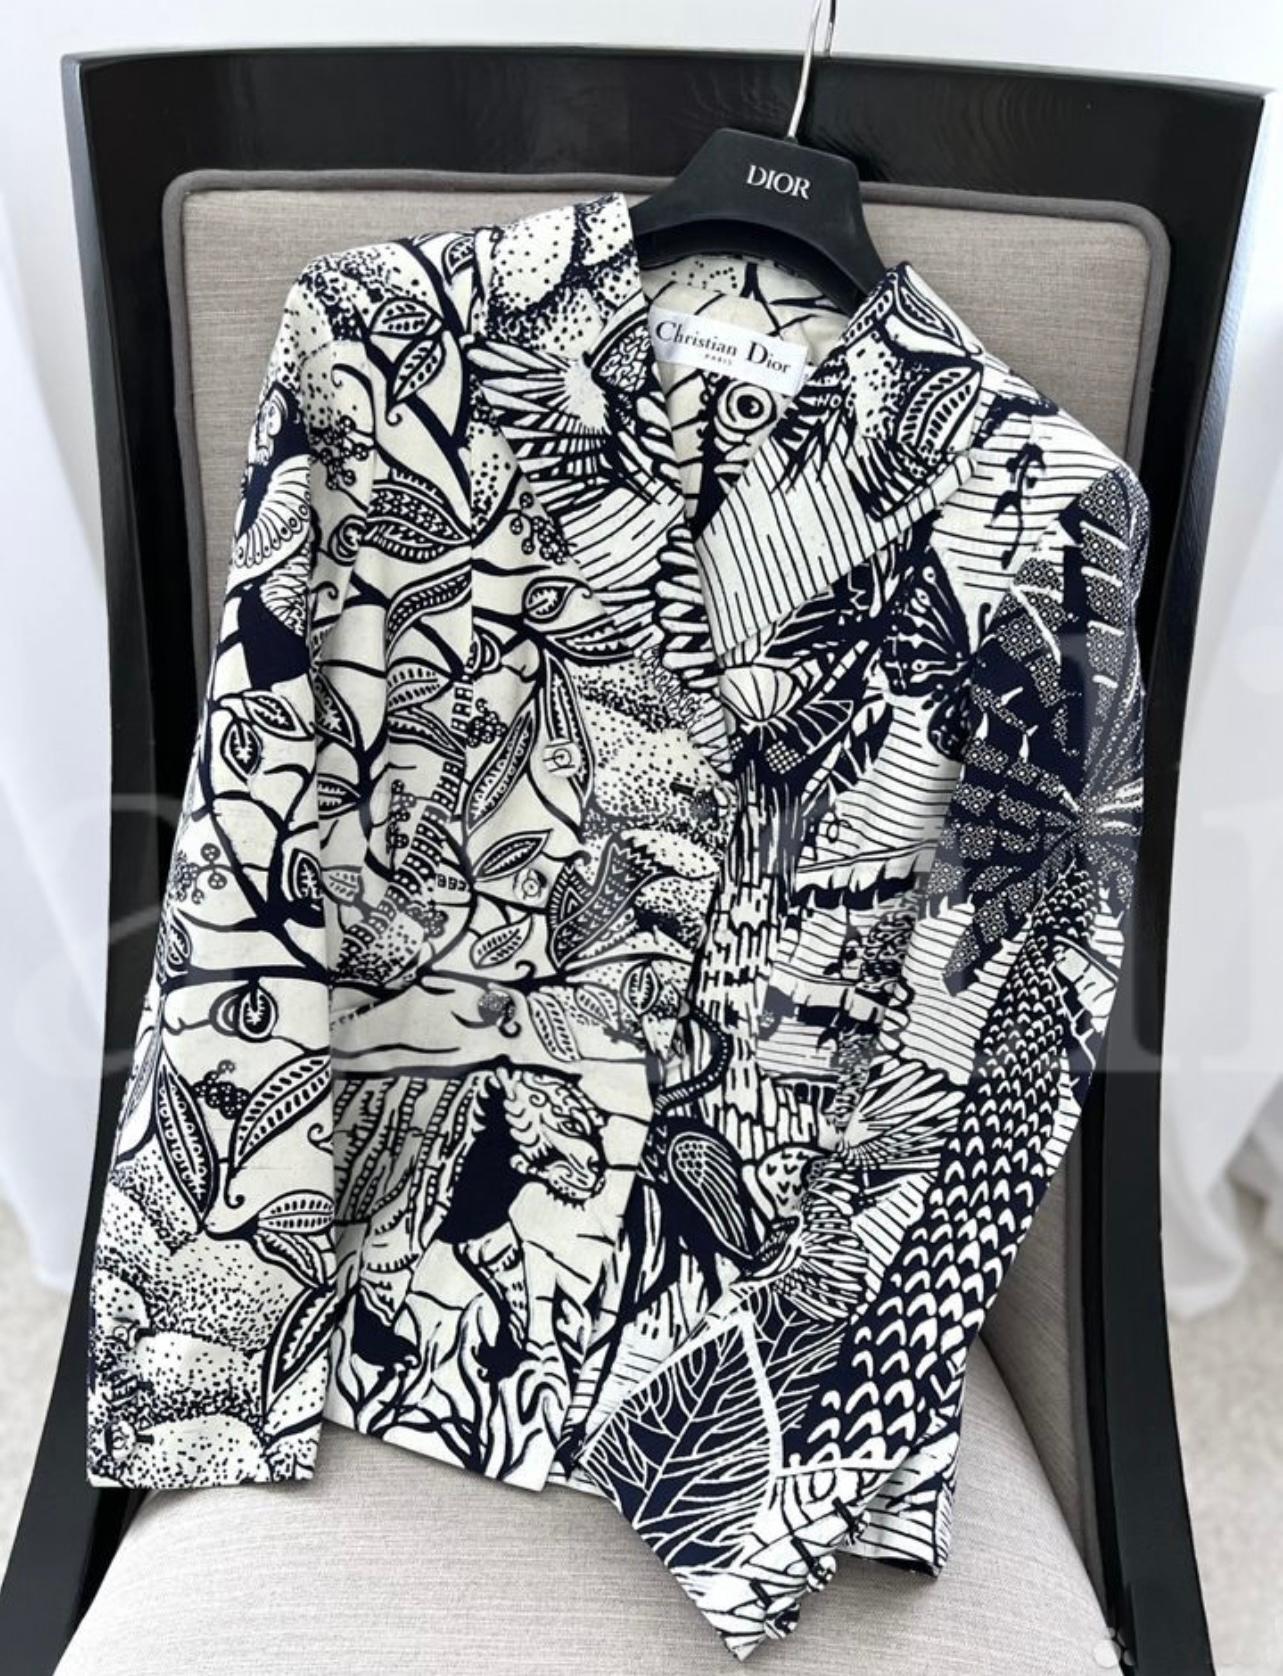 Dior Iconic BAR 35 Montaigne wunderschöne Jacke.
Größenbezeichnung 36 FR, tadelloser Zustand